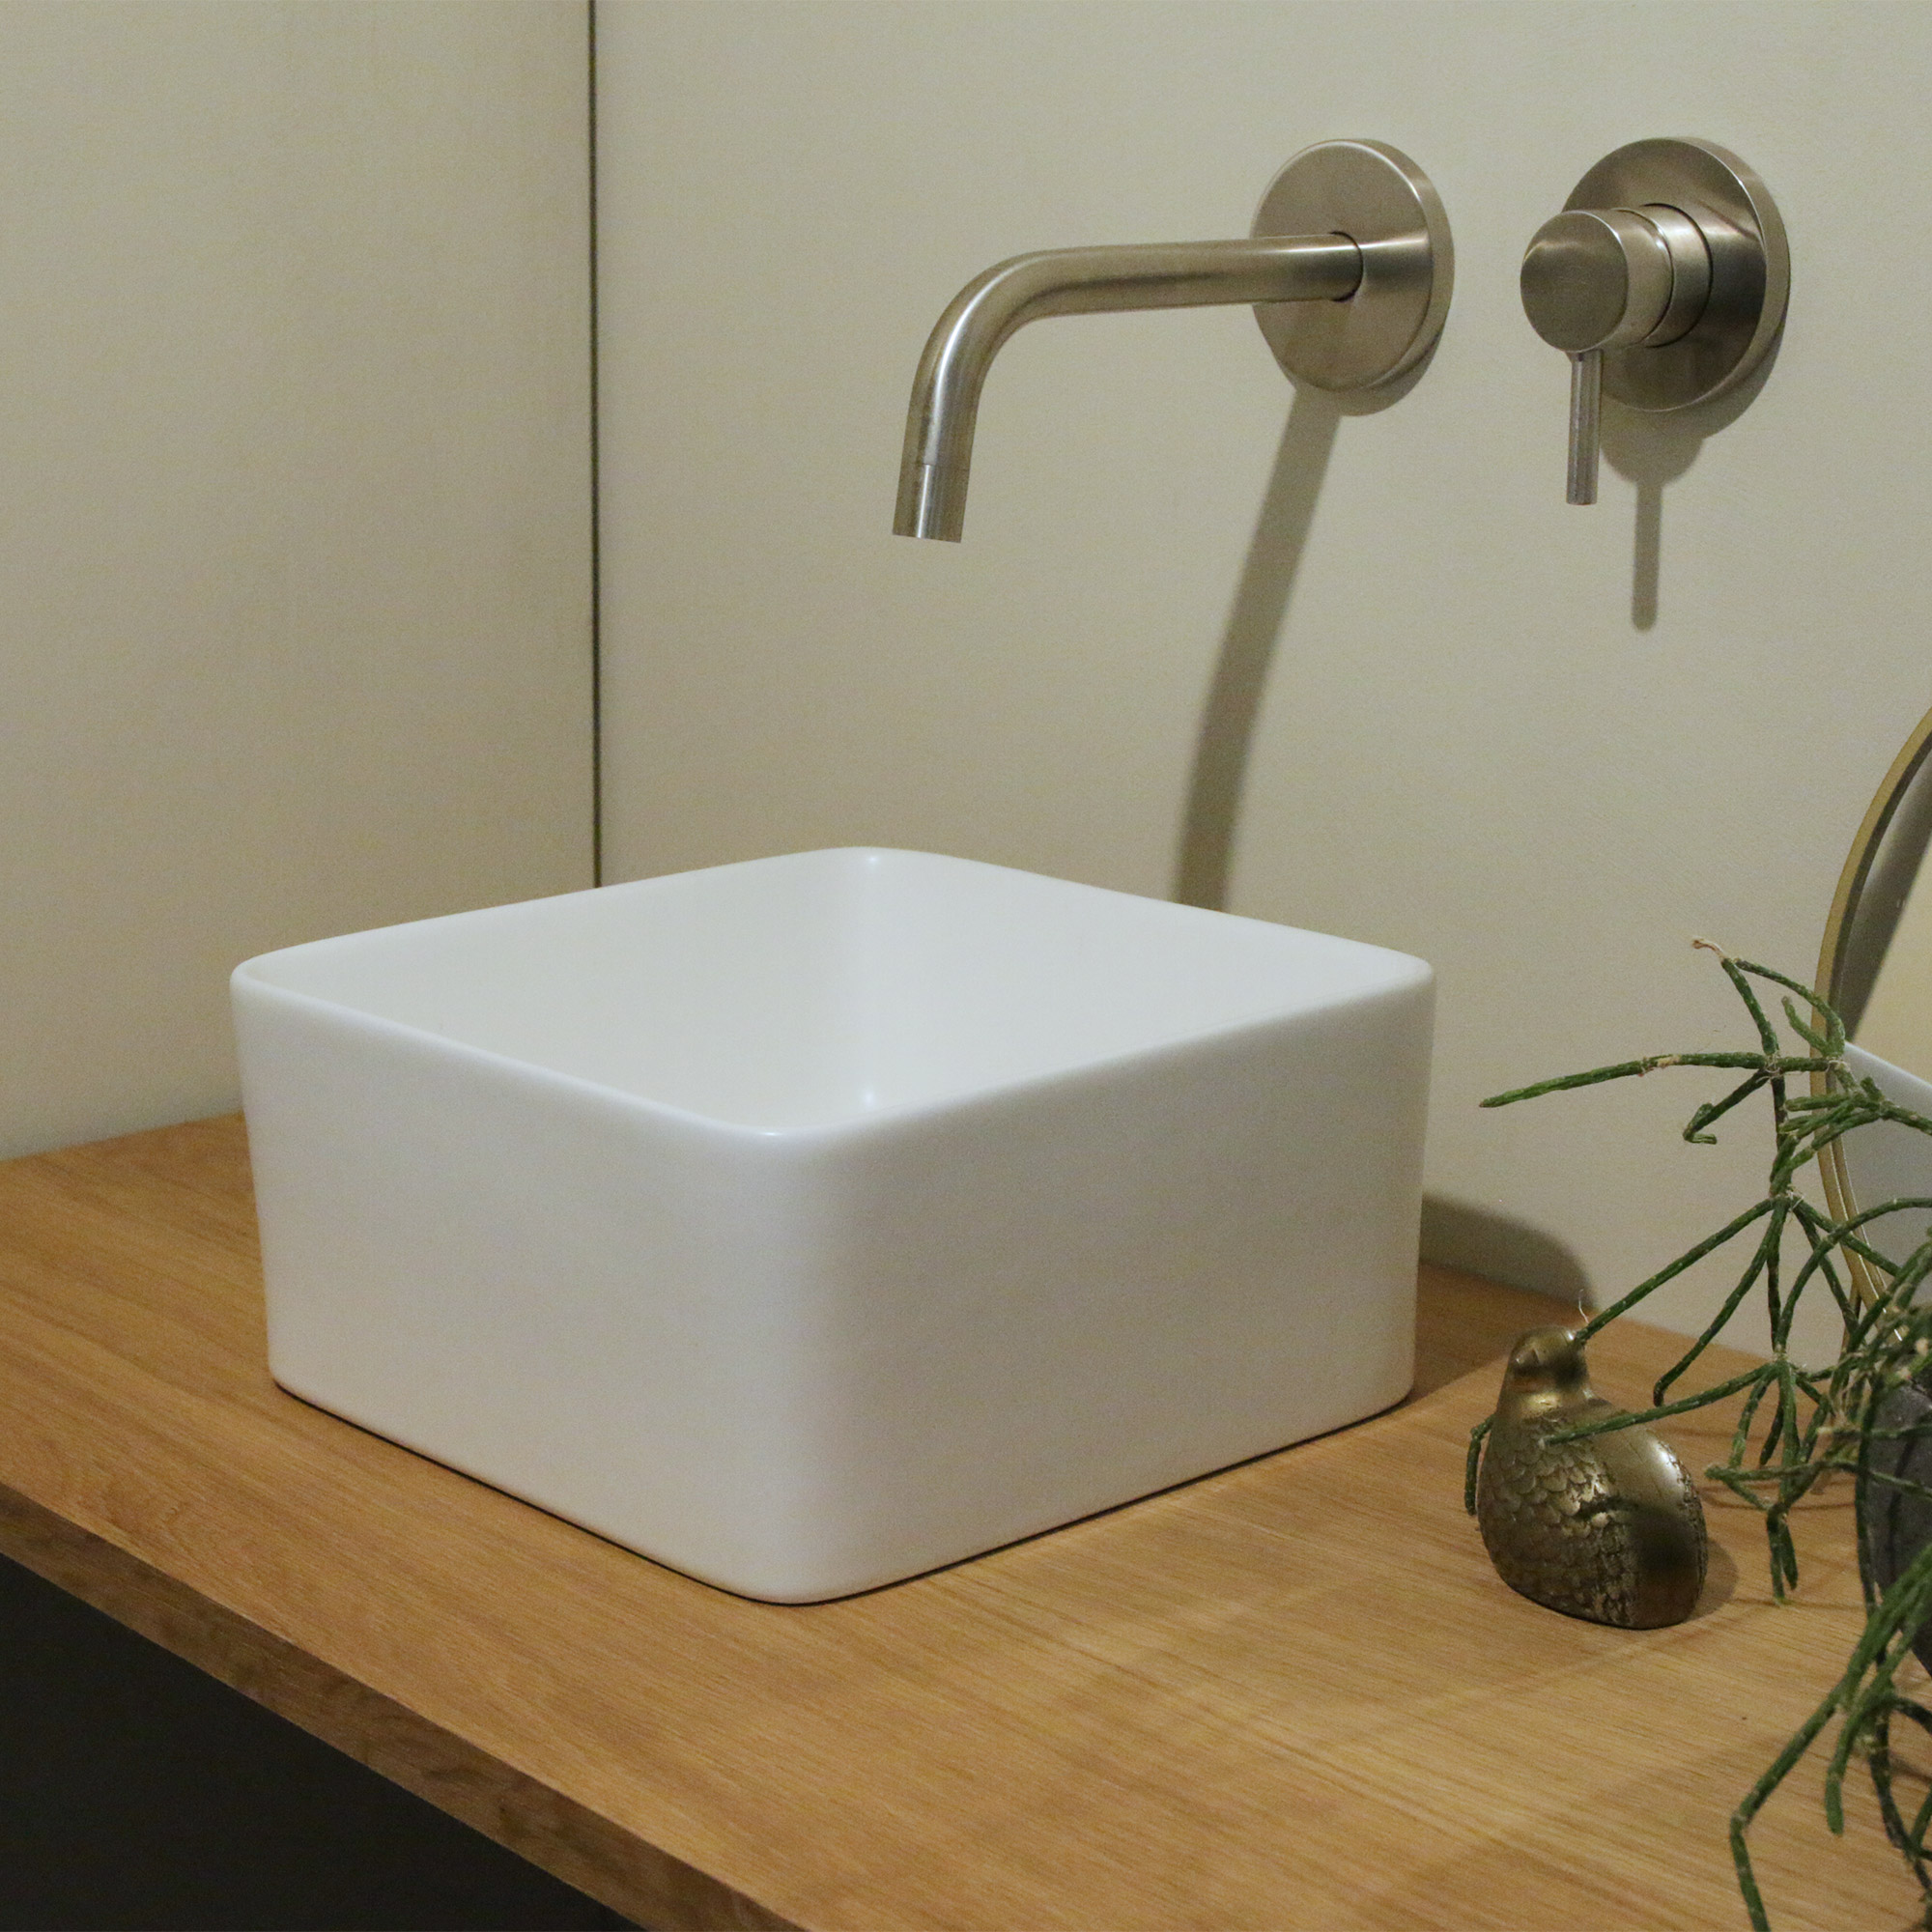 陶器の手洗い器 角240 ホワイト KB-PR012-01-G141 「壁付けセパレート混合水栓 洗面用 サテン L175」との組み合わせ ※水栓はオプションではないため、個別ページよりご購入ください